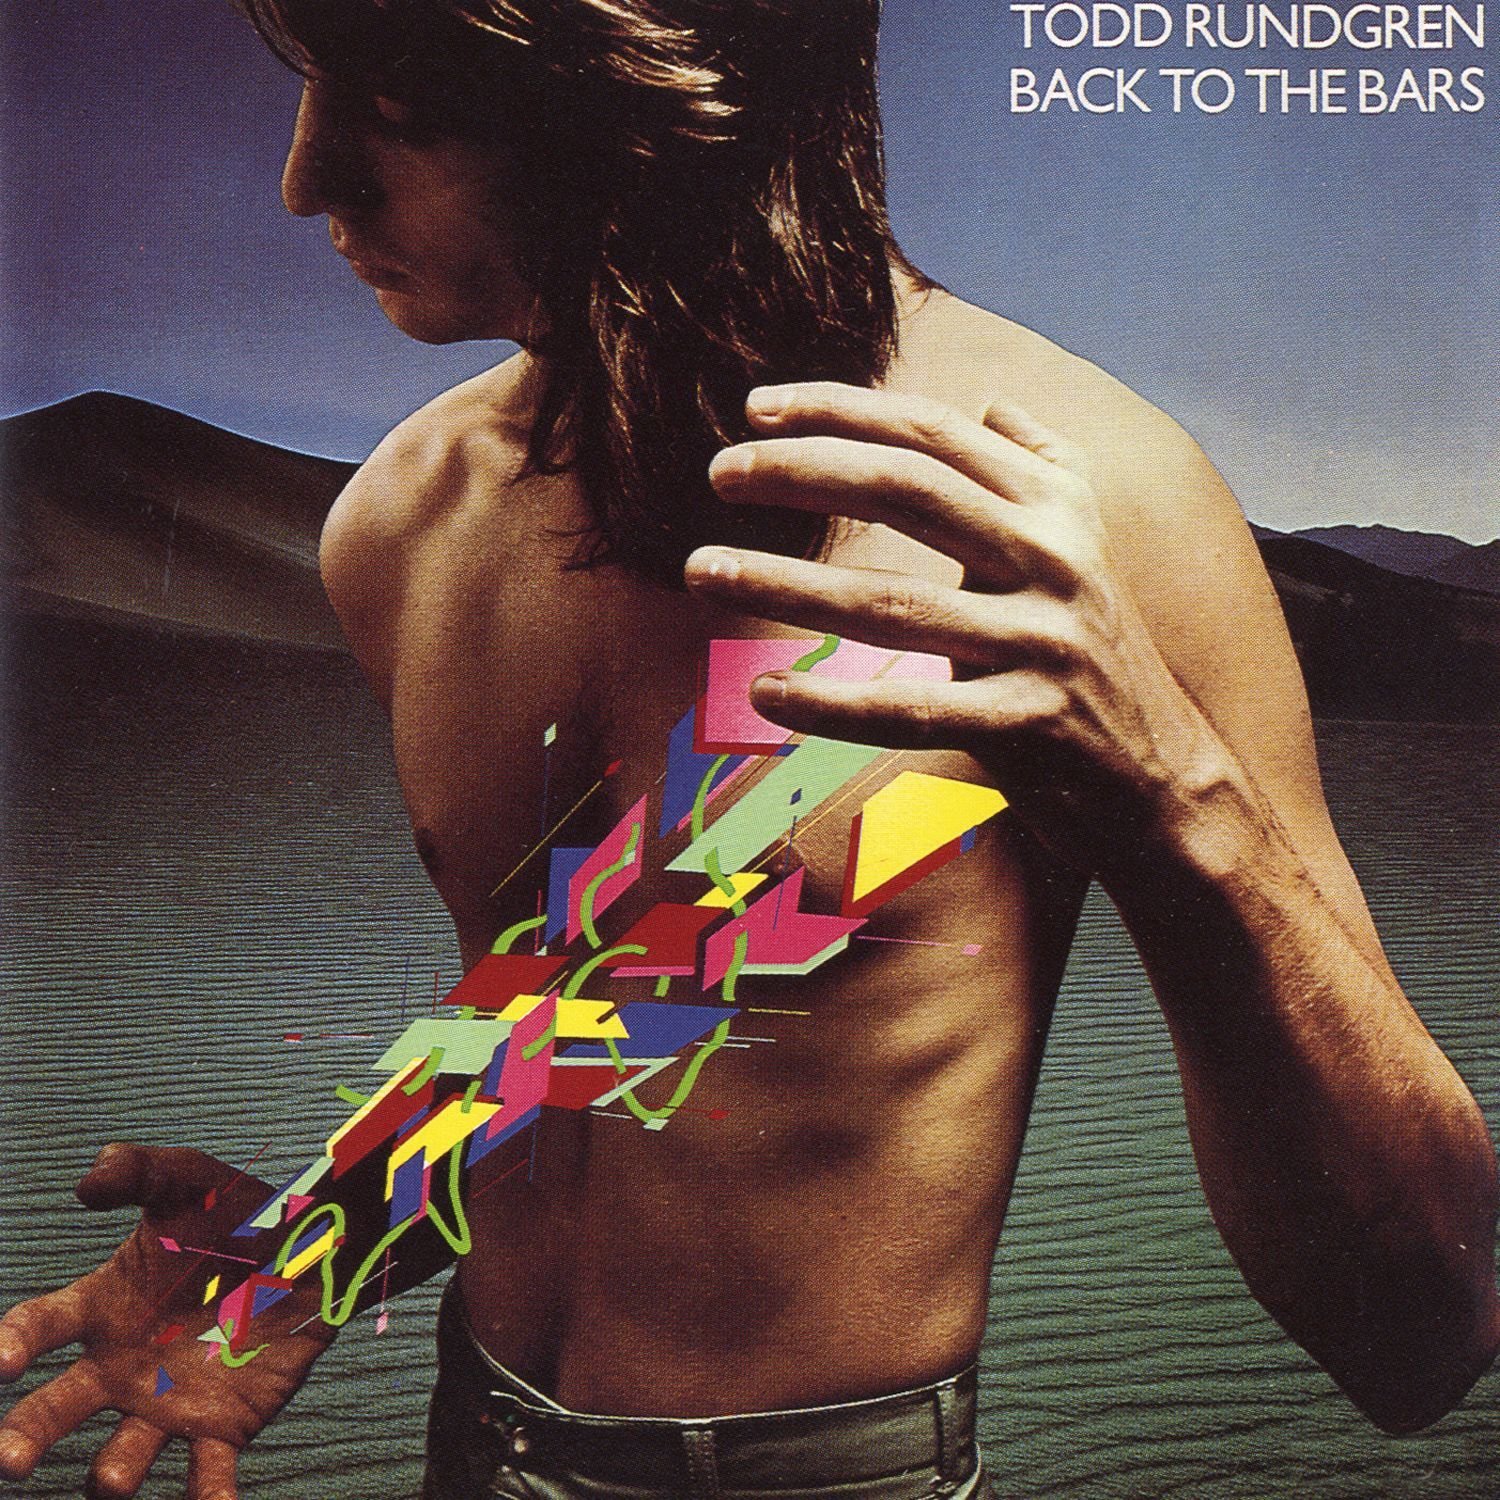 Todd Rundgren – Back to the Bars (Live) (1978/2016) [HDTracks FLAC 24bit/192kHz]